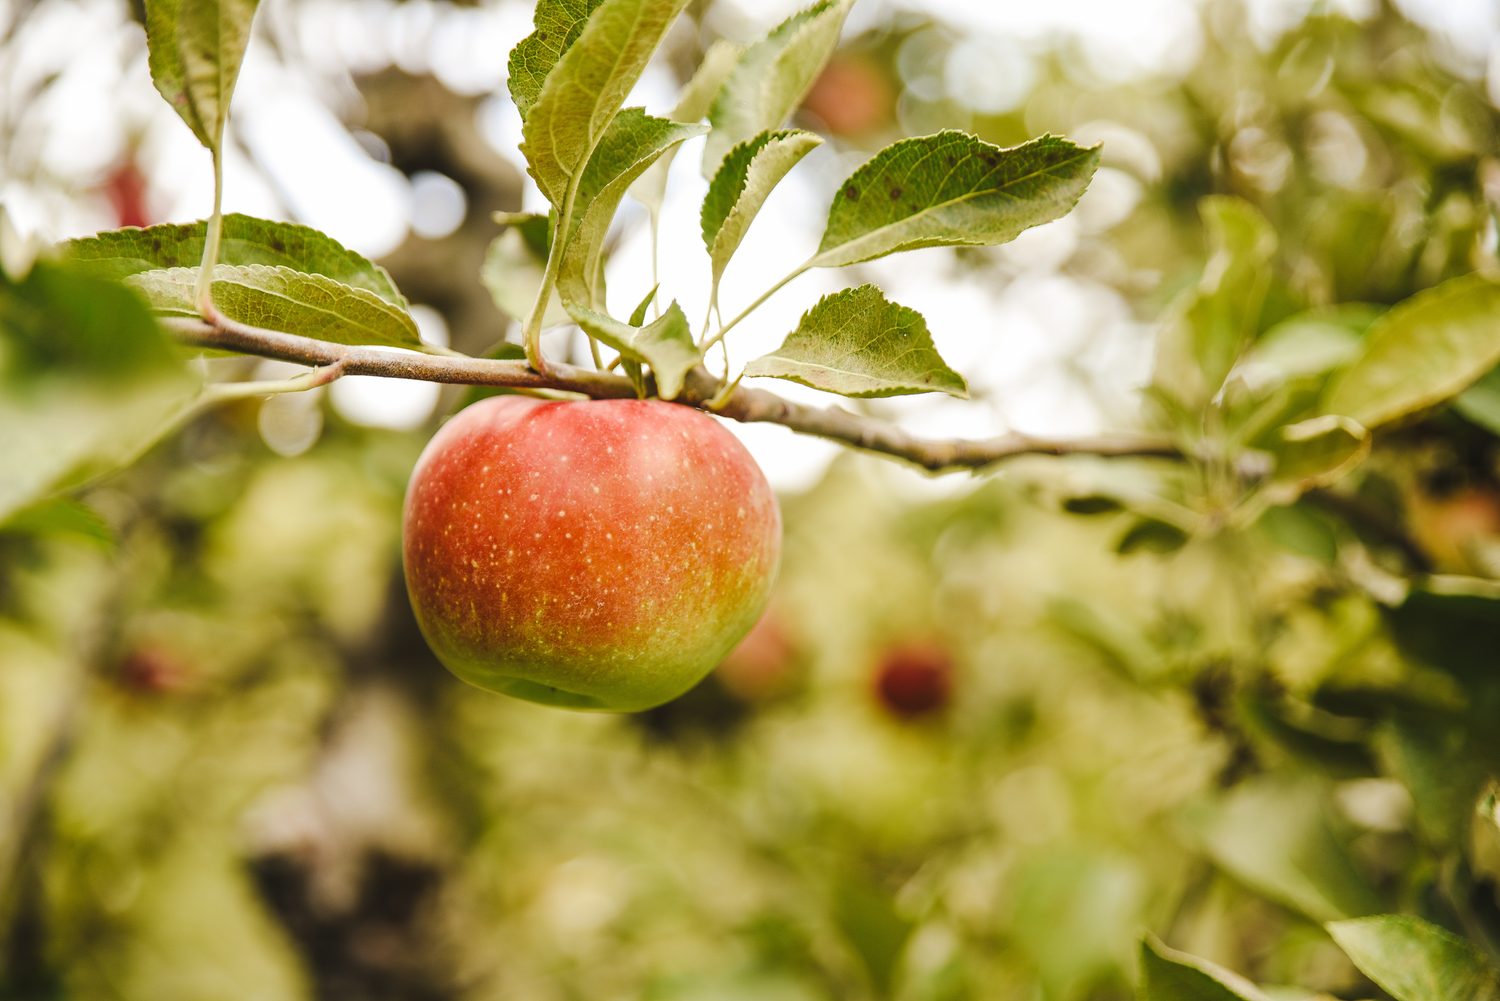 Pravidelná konzumace jablek může snižovat riziko kardiovaskulárních onemocnění